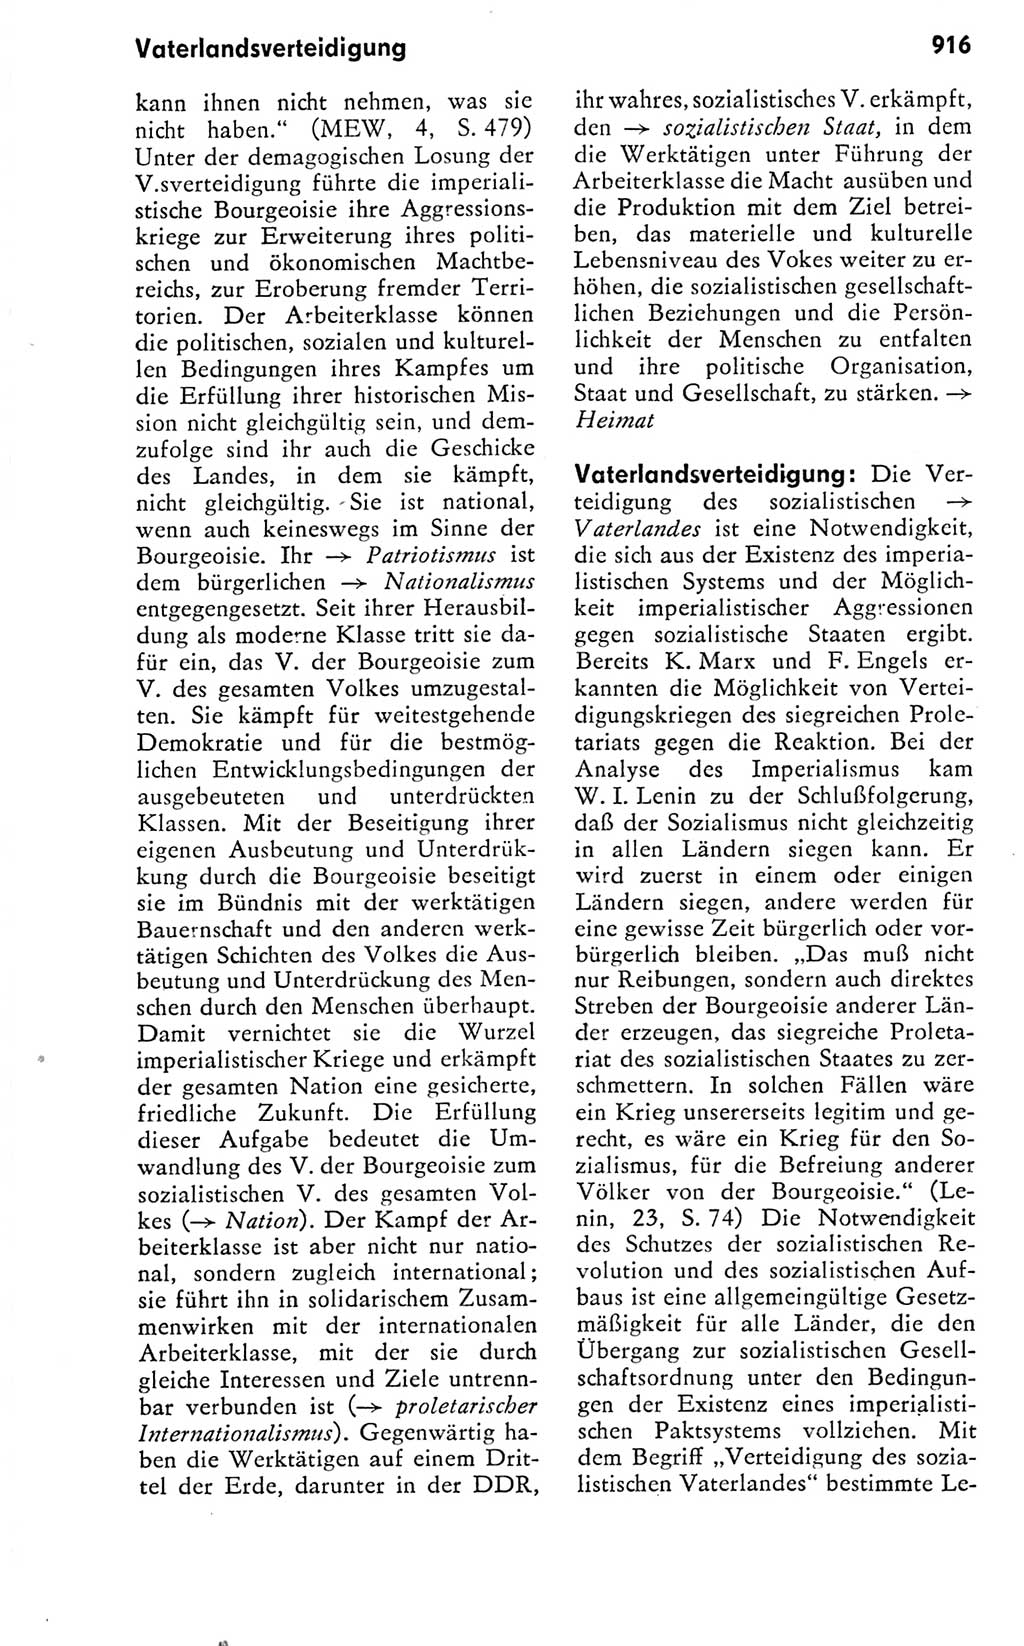 Kleines politisches Wörterbuch [Deutsche Demokratische Republik (DDR)] 1978, Seite 916 (Kl. pol. Wb. DDR 1978, S. 916)